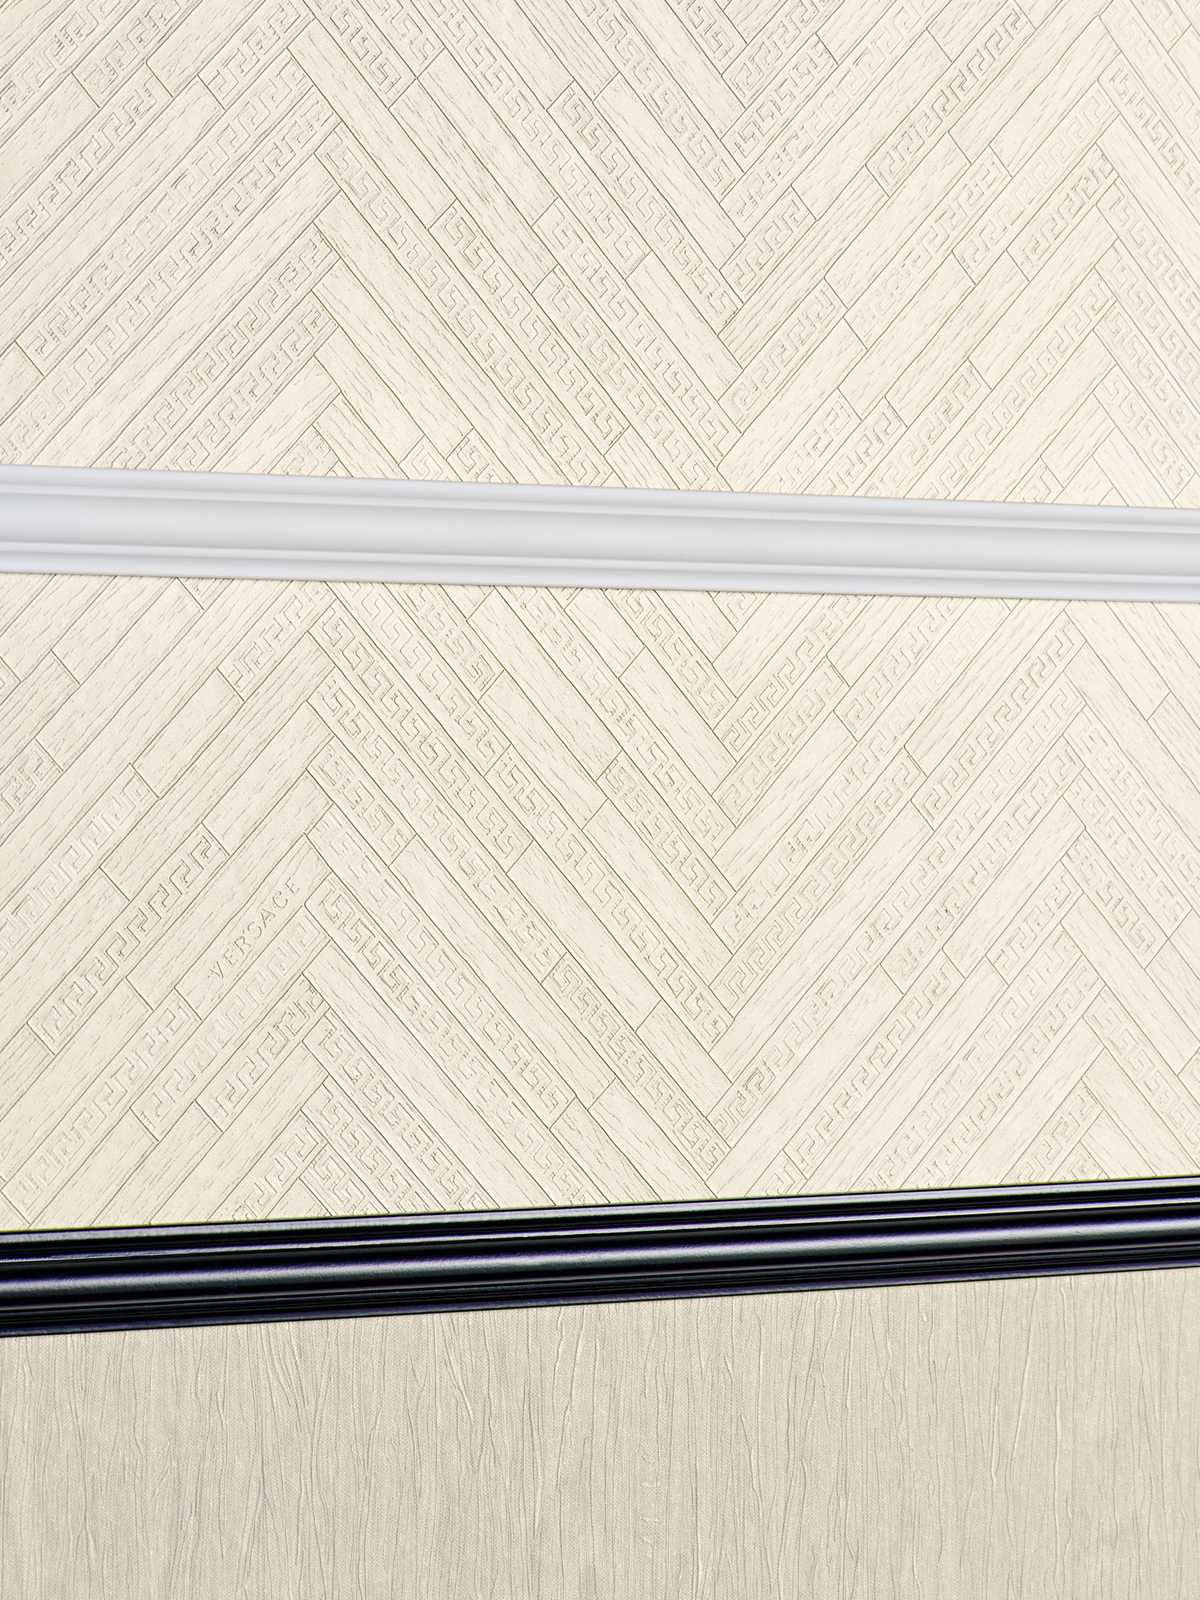             VERSACE Home Tapete realistische Holz Optik – Beige, Creme, Weiß
        